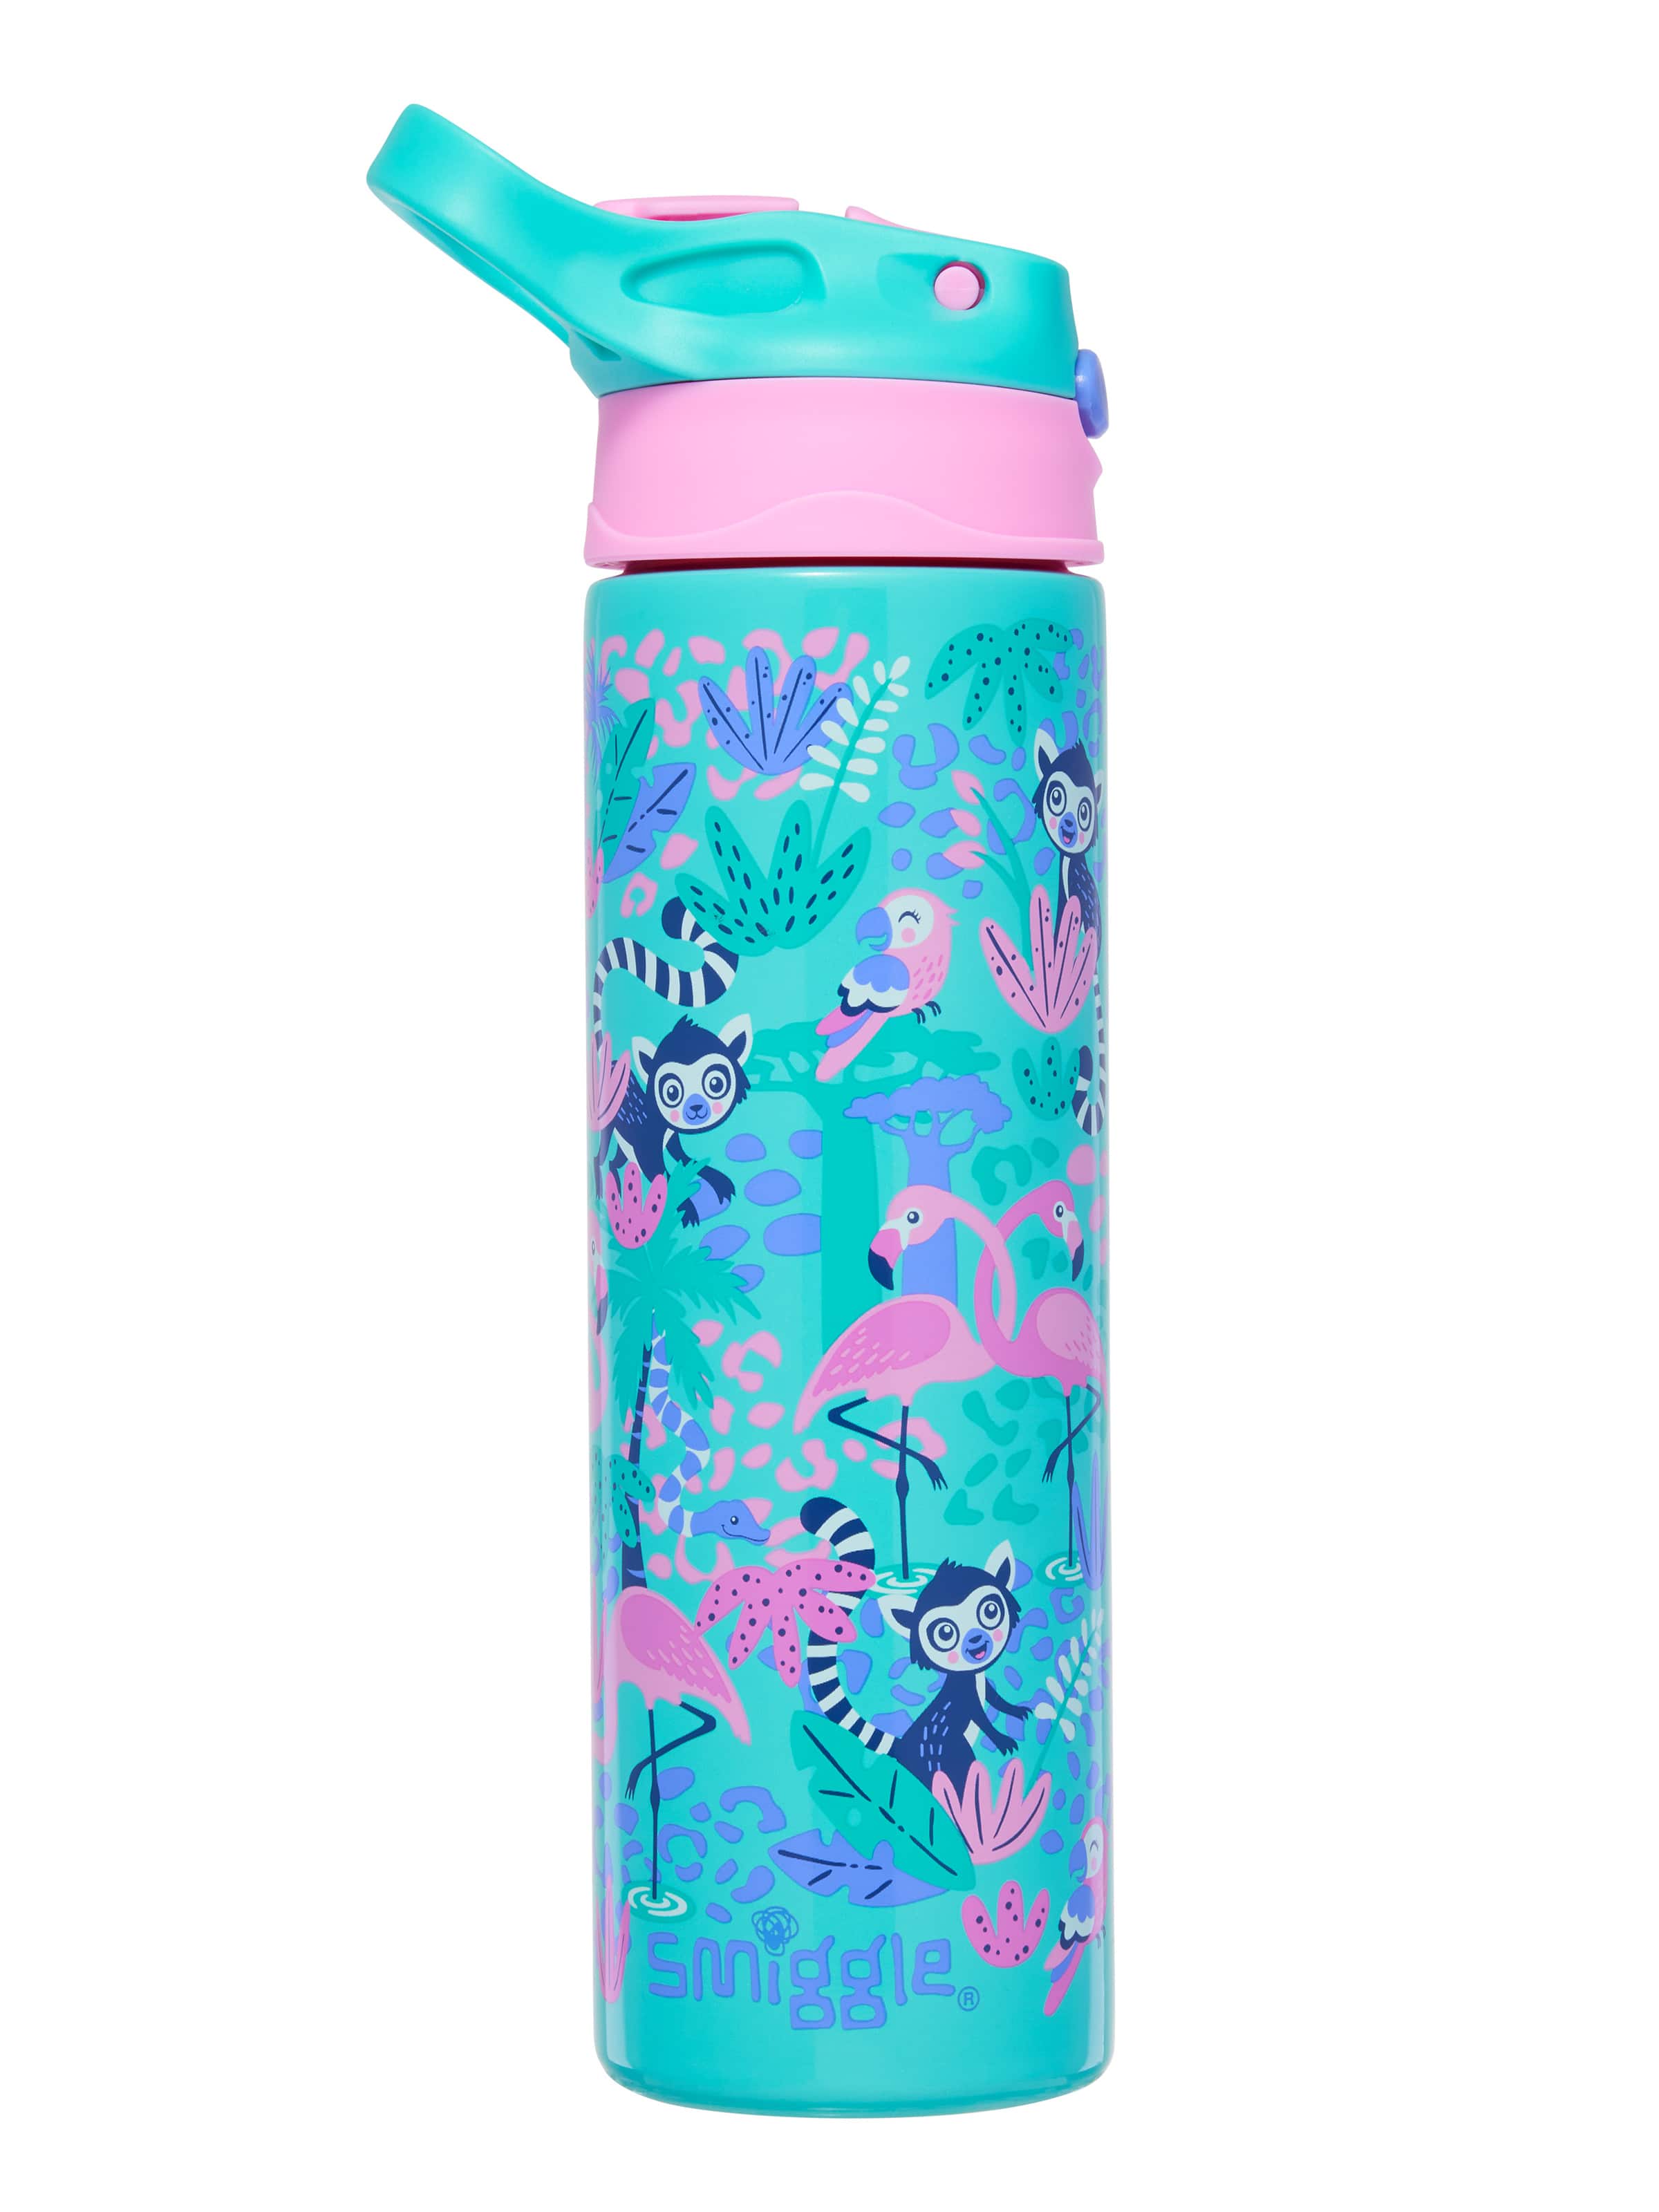 Bear Water Bottle With Straw Cute Water Leak Proof Bottles Portable  Leakproof Water Jug For Kids Girls Boys Pink 